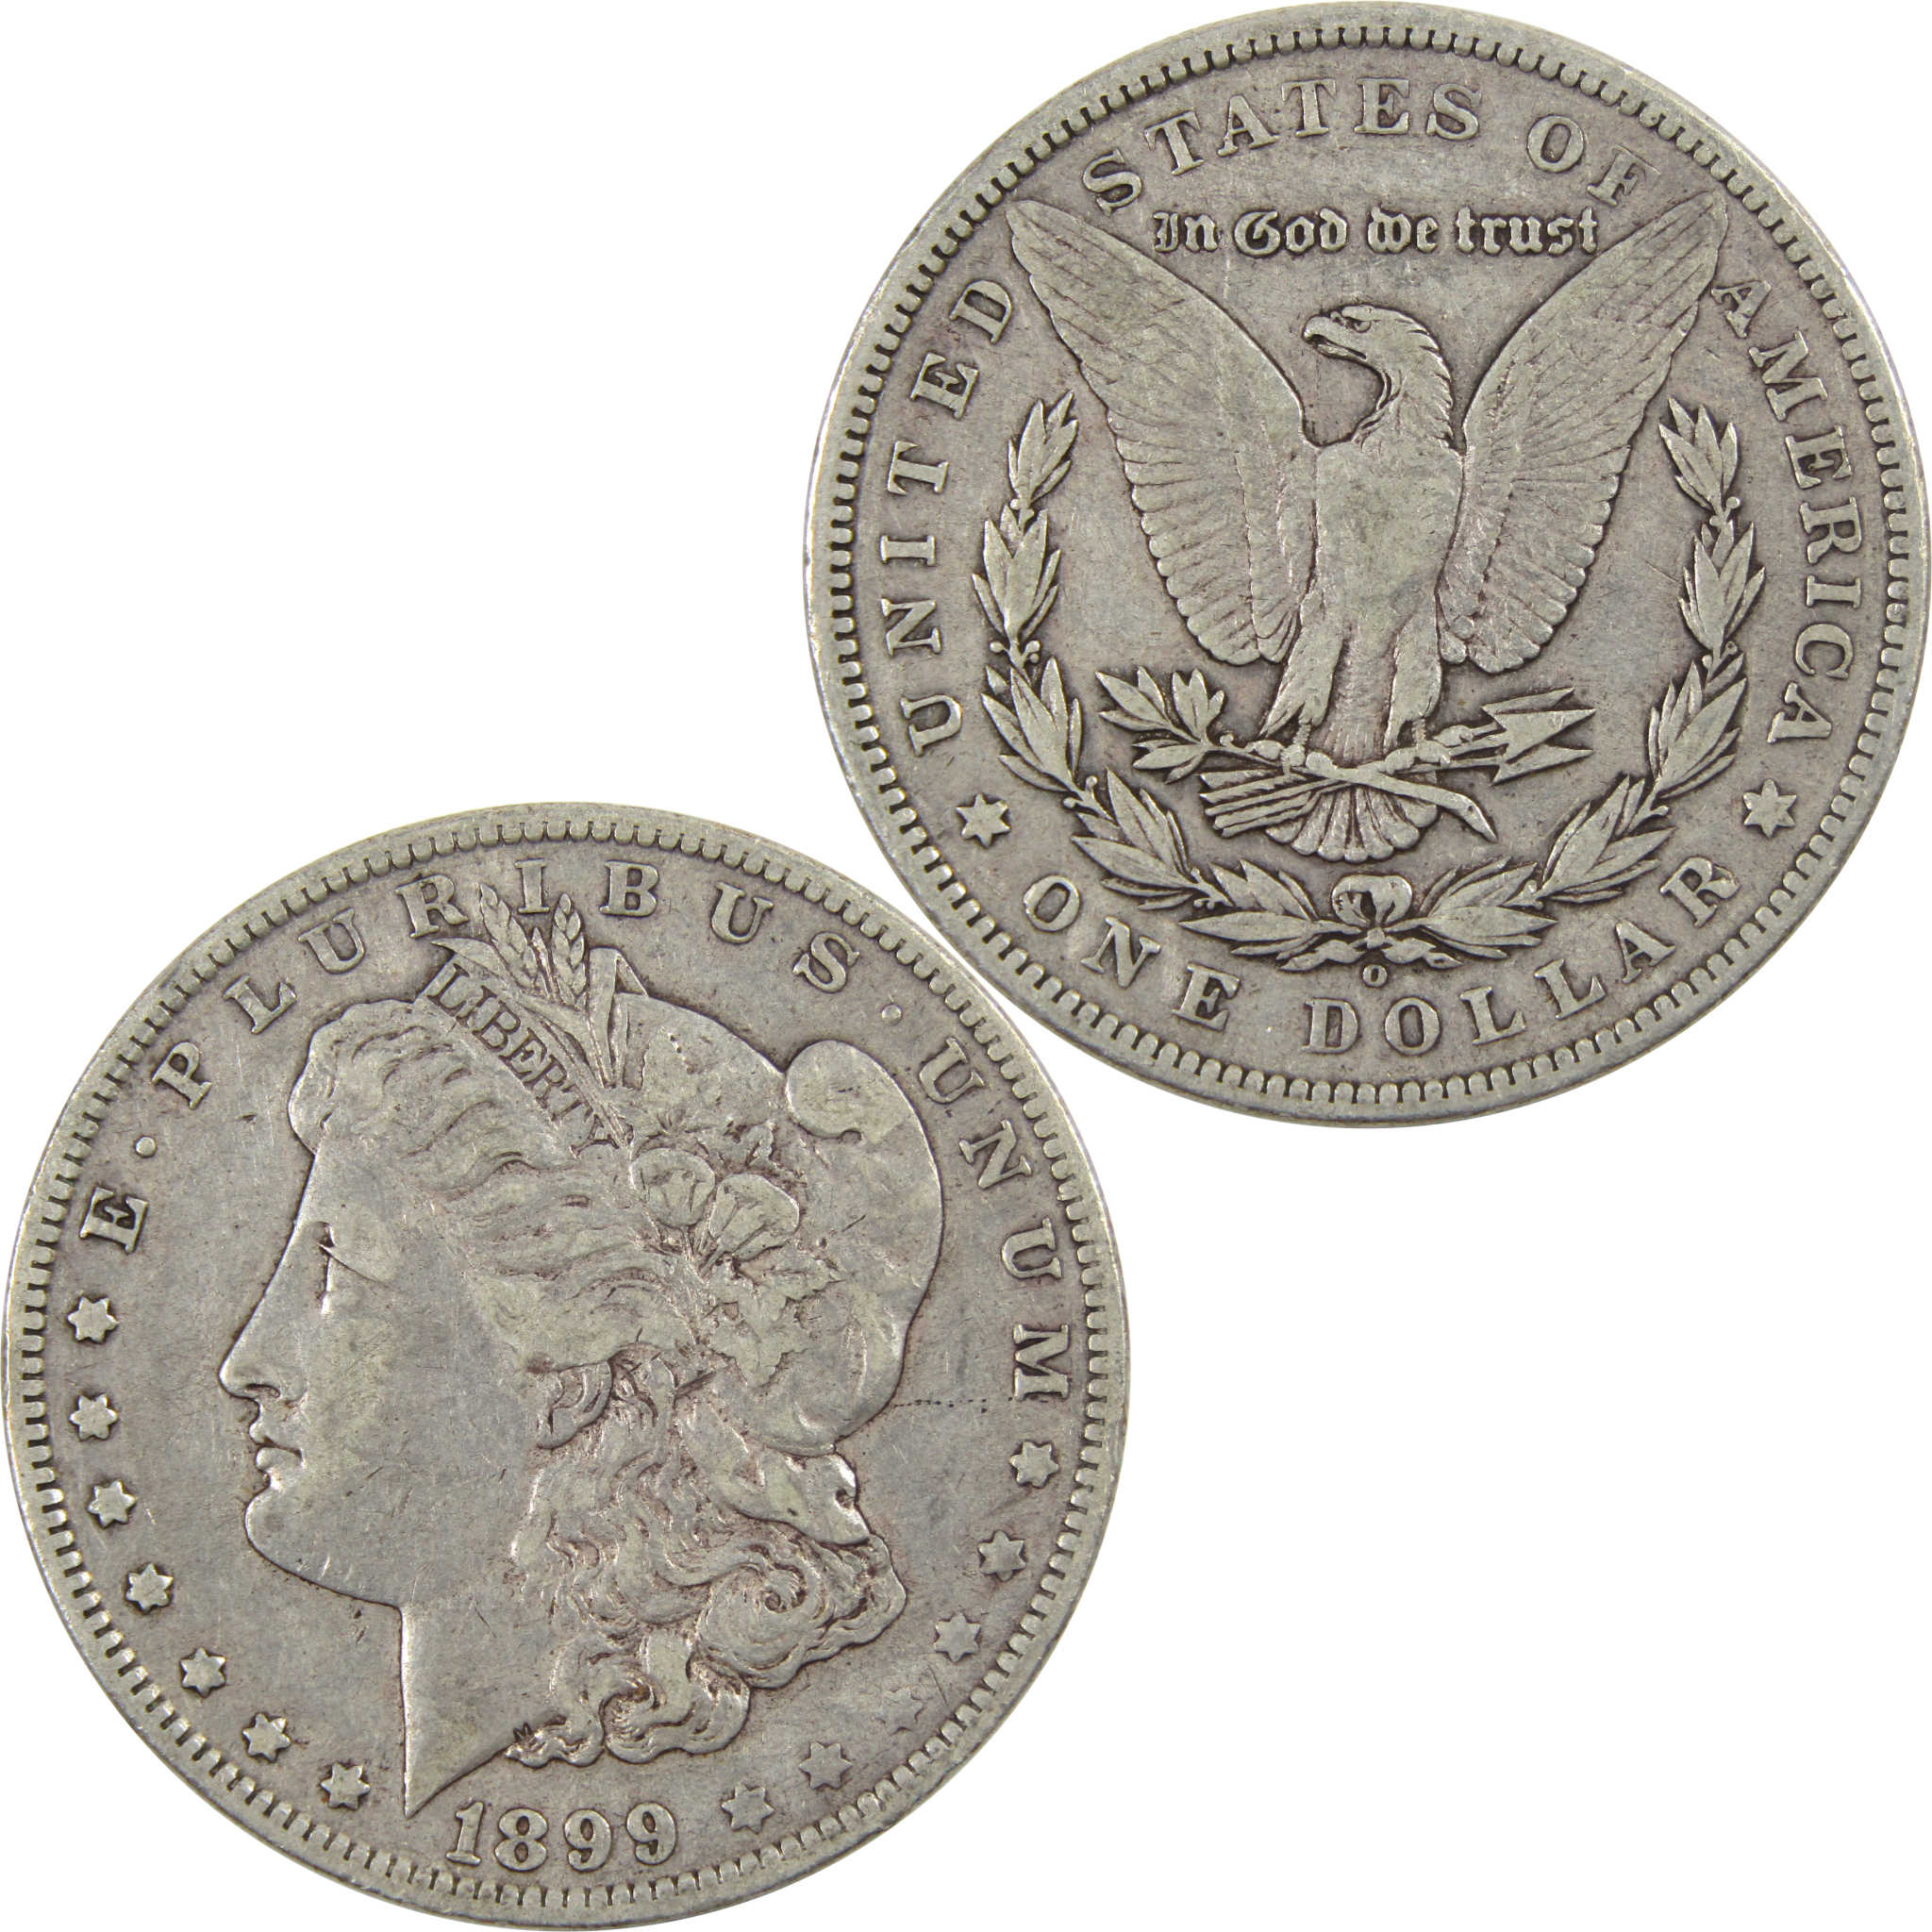 1899 O Micro O Morgan Dollar VF Very Fine 90% Silver $1 Coin SKU:I5941 - Morgan coin - Morgan silver dollar - Morgan silver dollar for sale - Profile Coins &amp; Collectibles